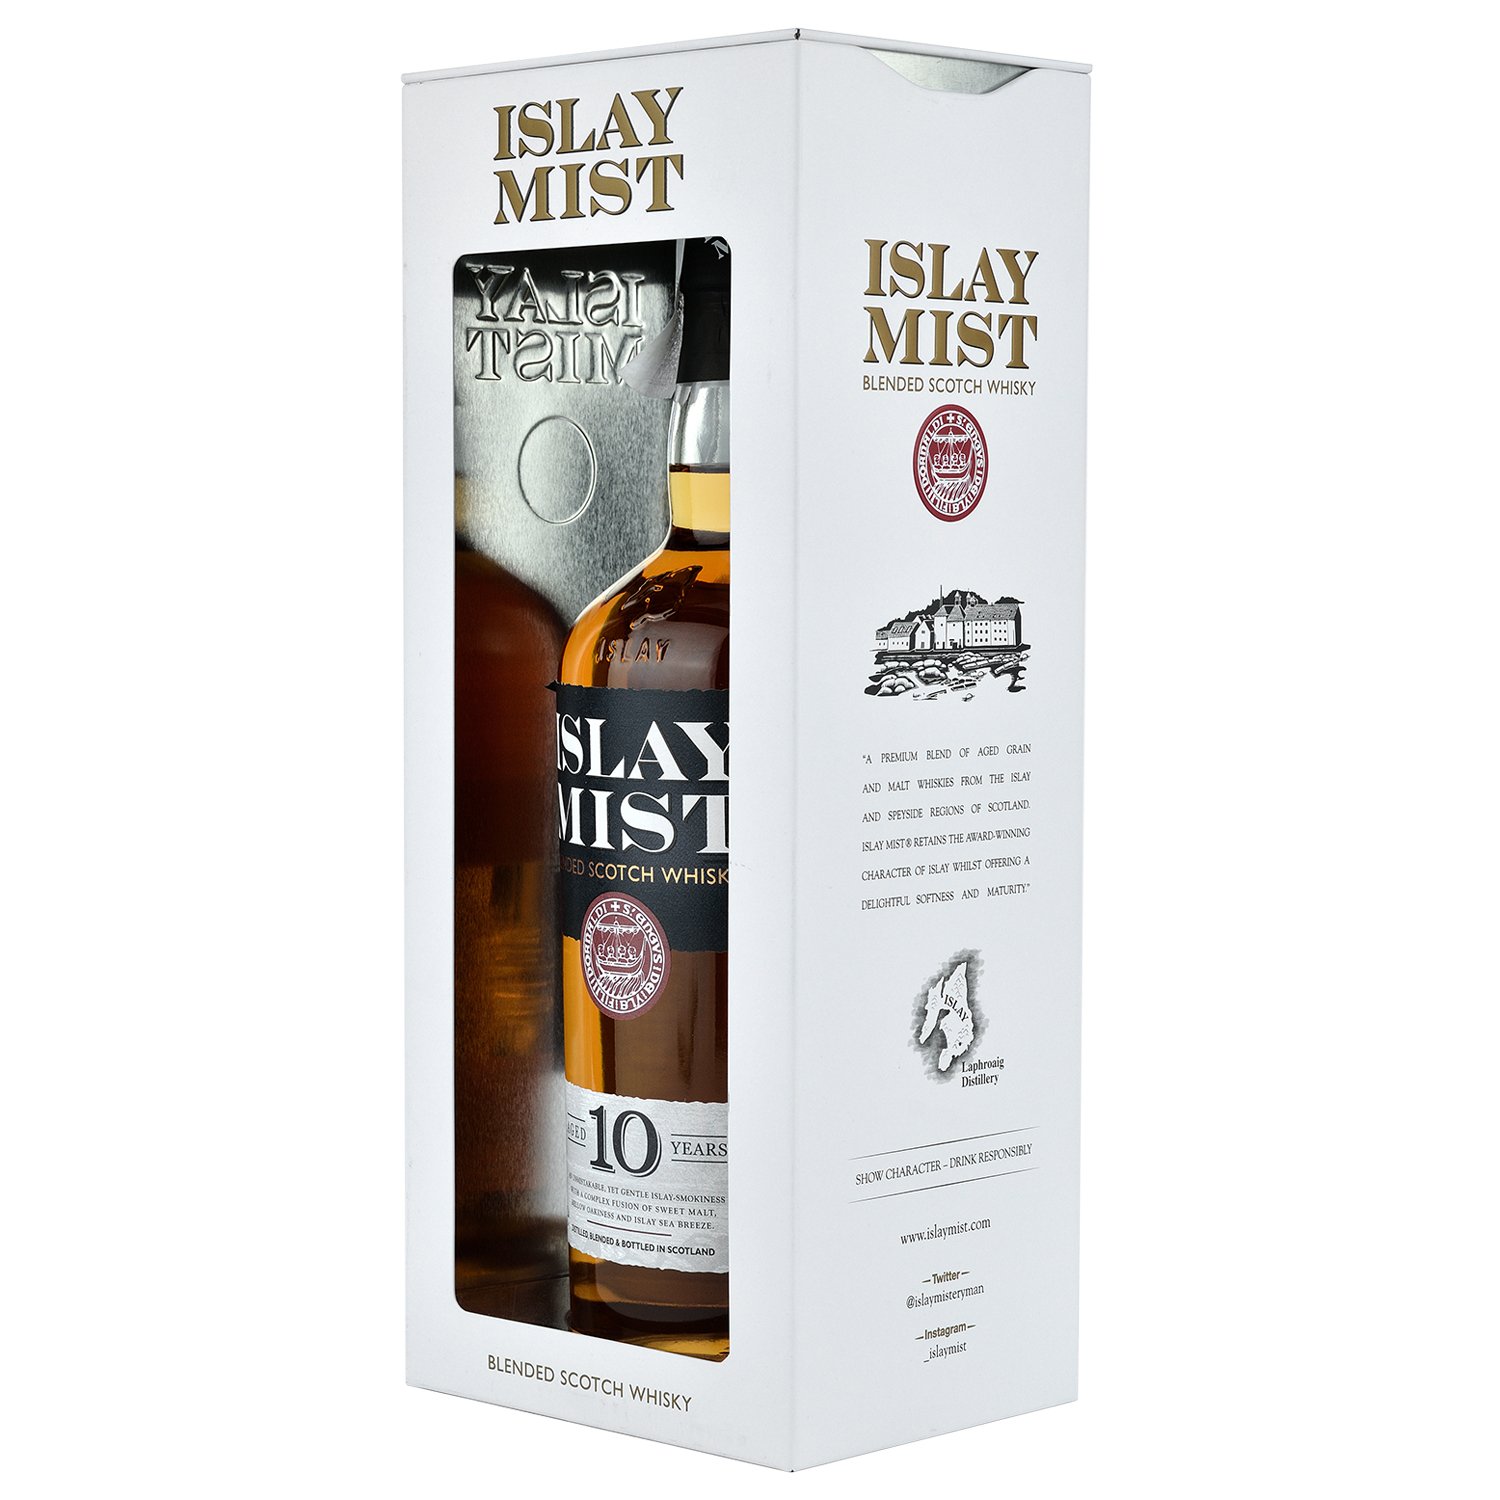 Віскі Islay Mist Blended Scotch Whisky 10 yo, в подарунковій упаковці, 40%, 0,7 л - фото 2